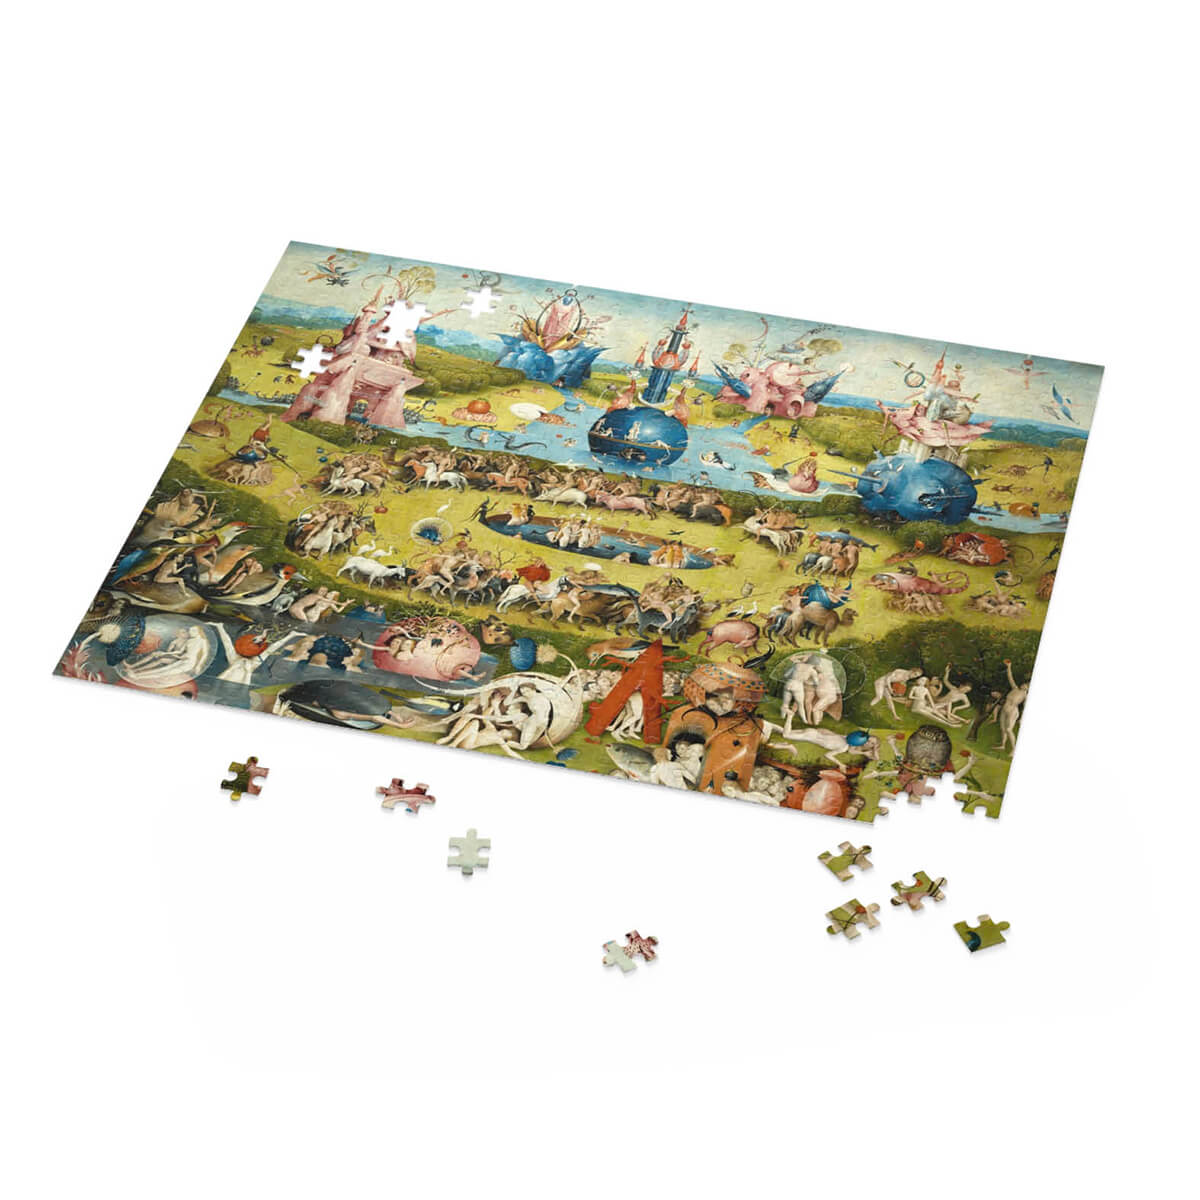 Hieronymus Bosch Puzzle Image